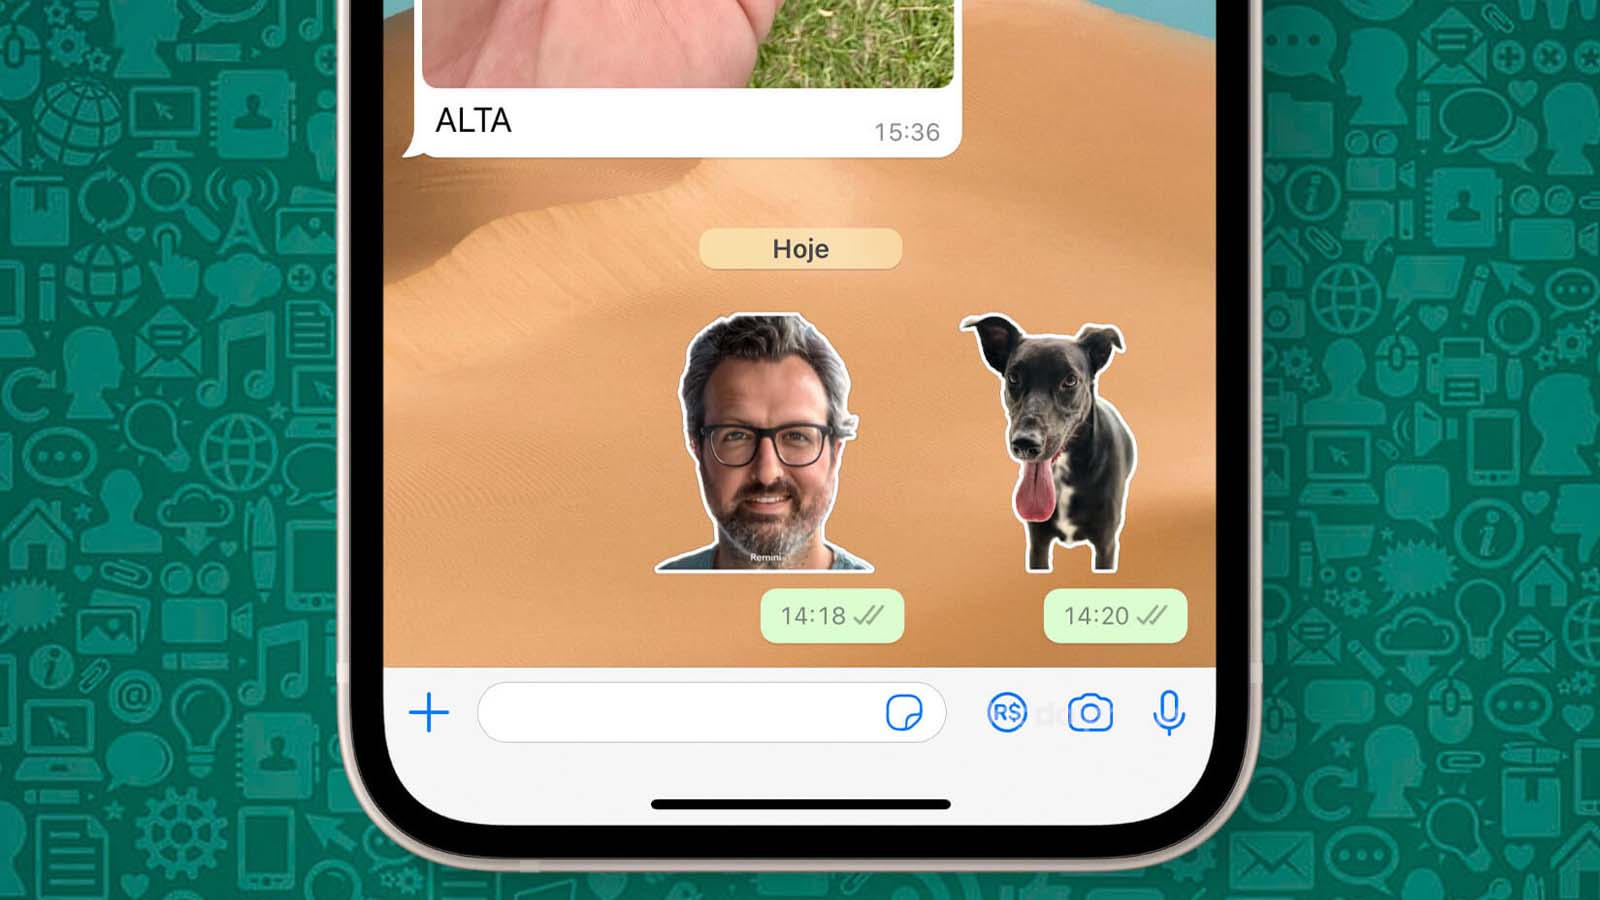 Esplora come WhatsApp si trasforma in un'opportunità di intrattenimento tra amici, scambiando stickers divertenti